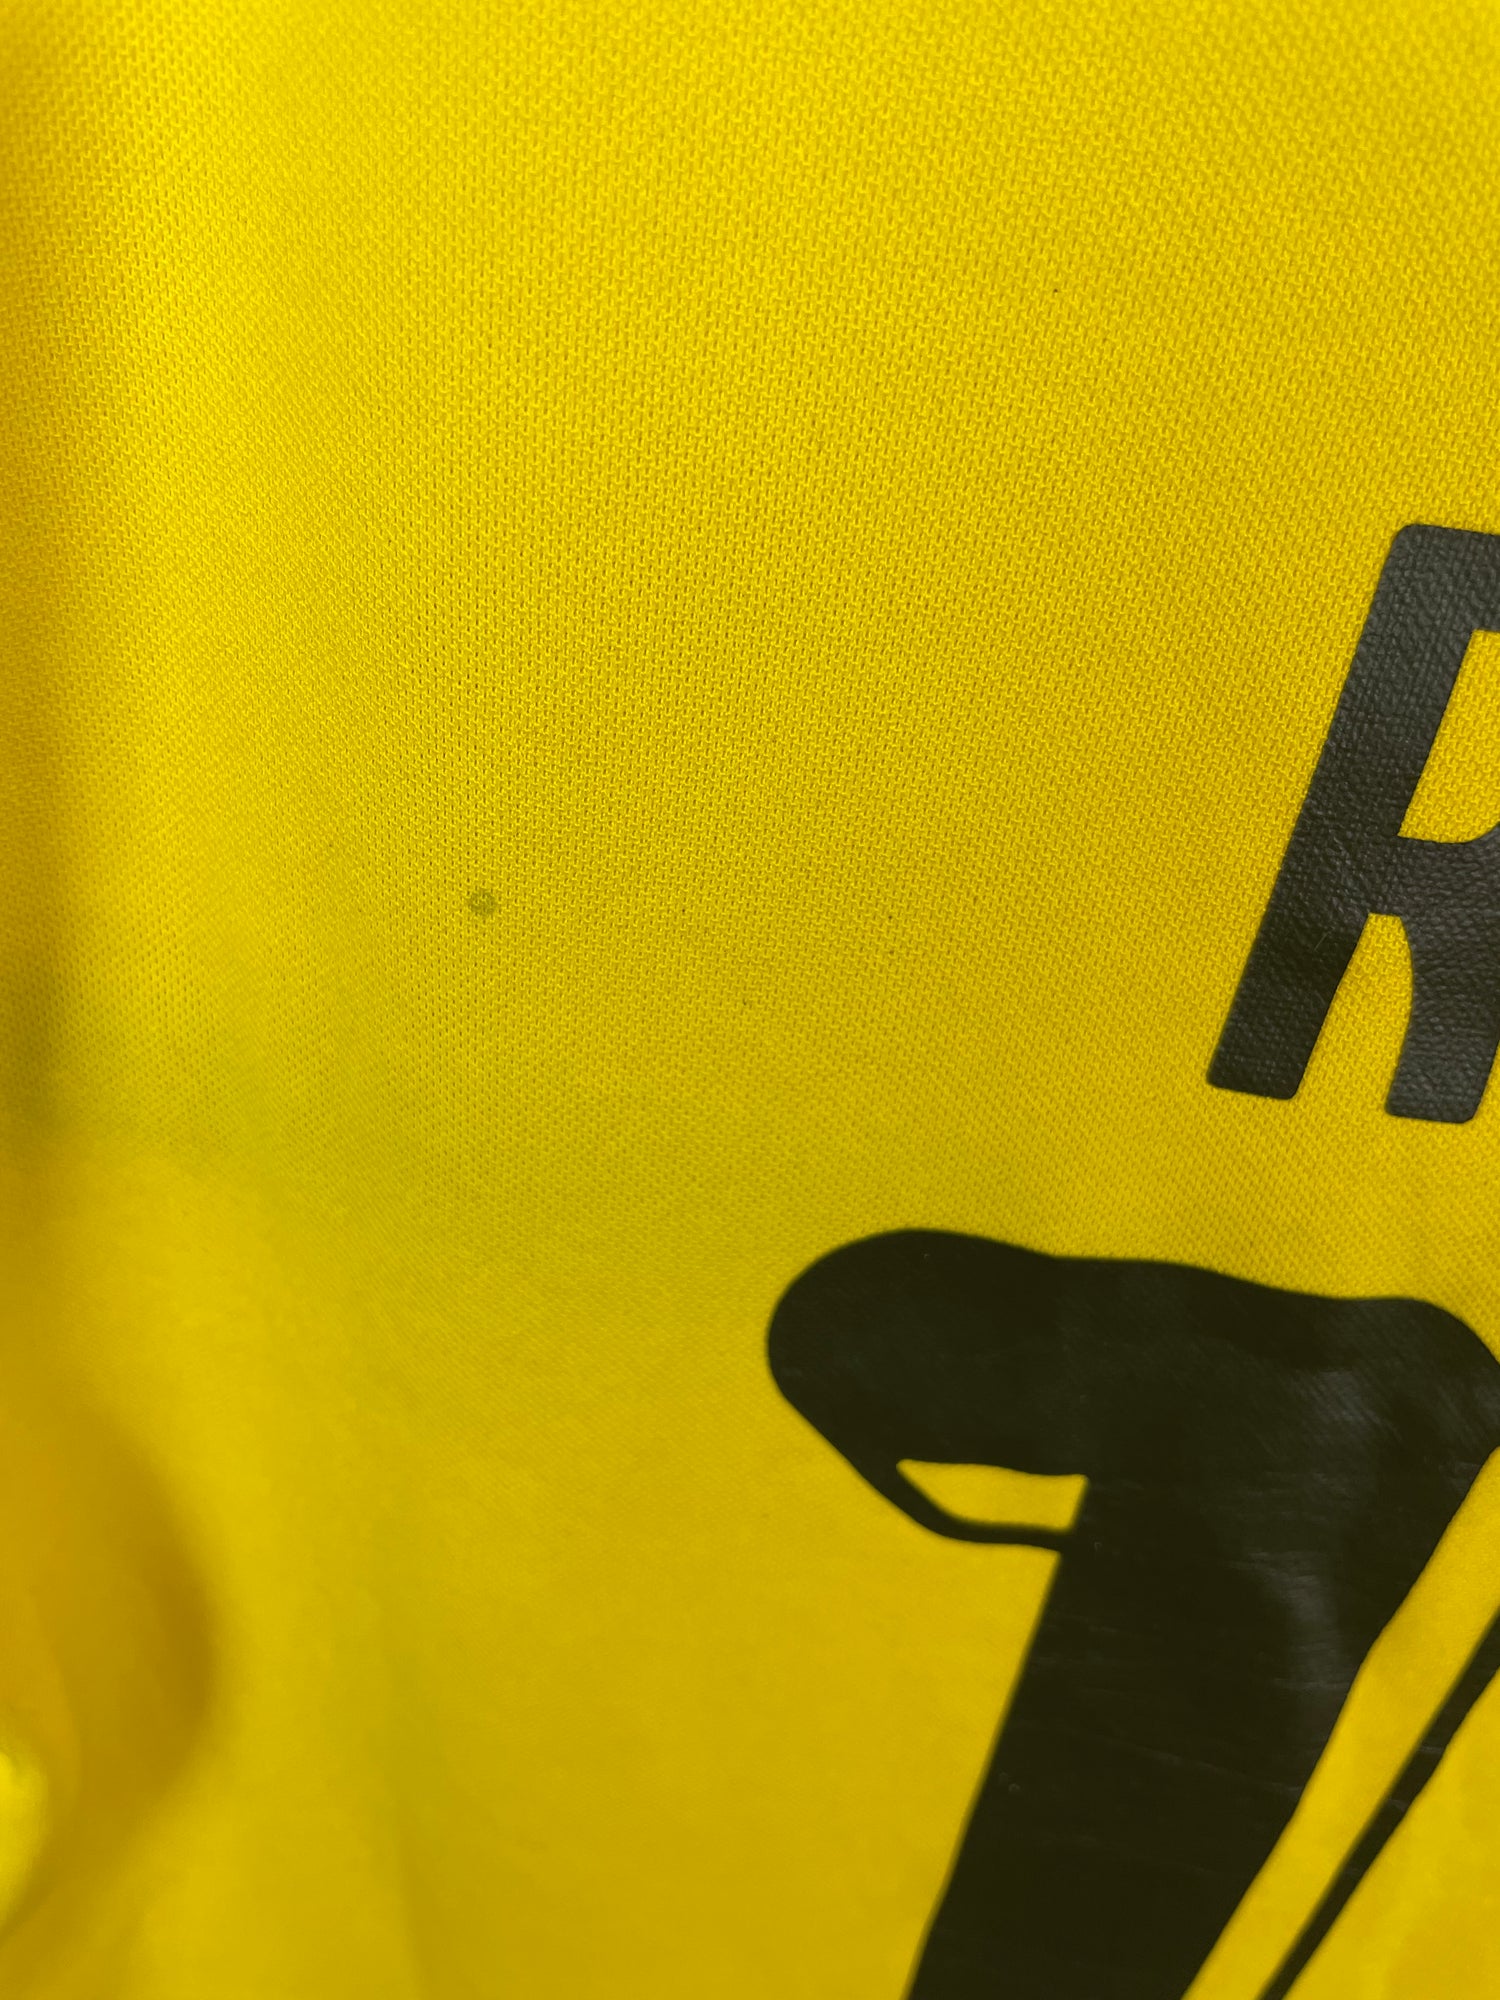 Maro Reus Dortmund 15/16 hjemmebanetrøje - M